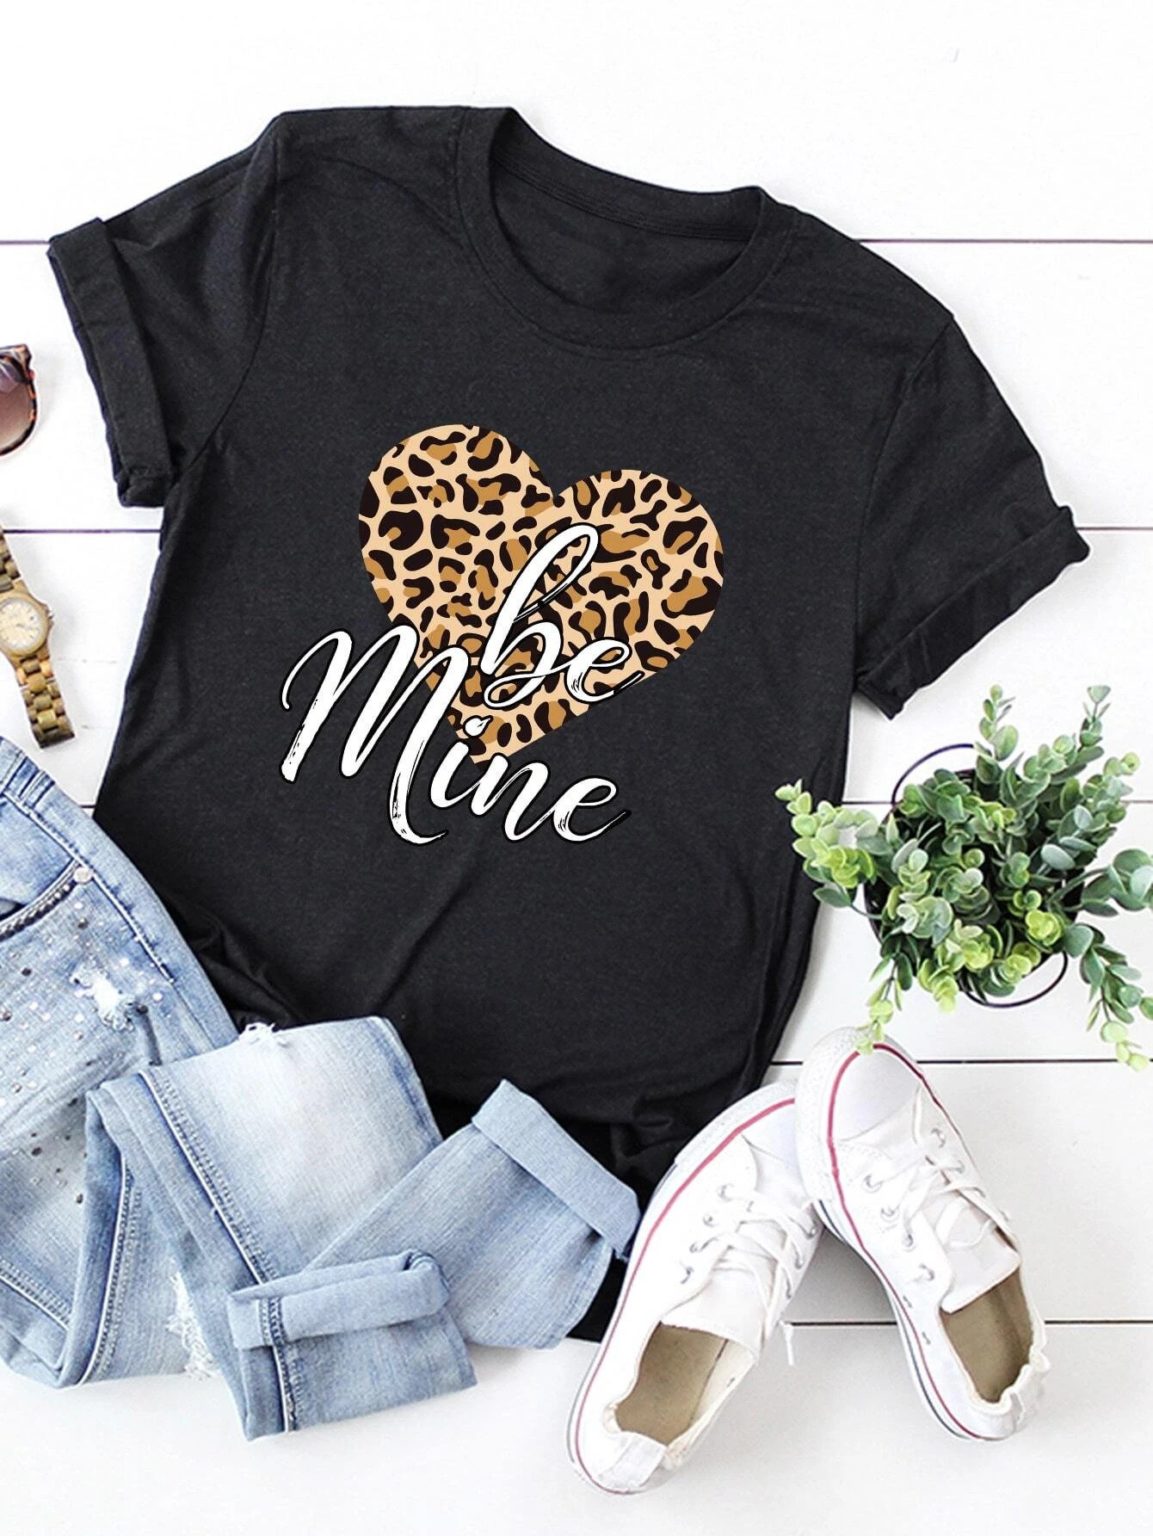 Дамска тениска Be Mine / Leopard Heart DTG